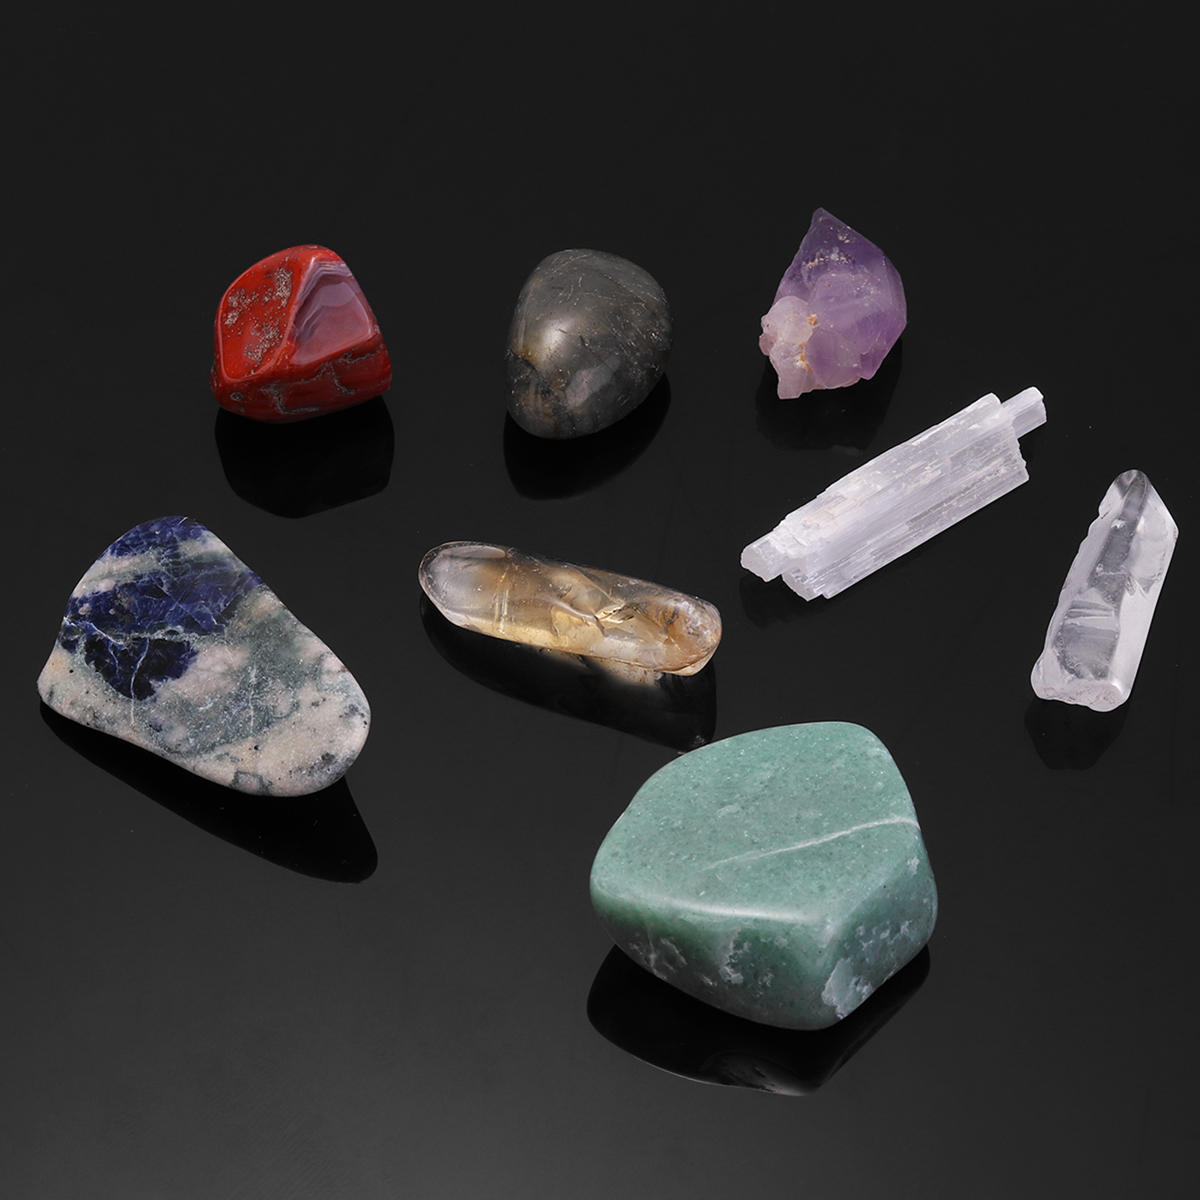 8PCS Natural Crystals Gemstones Quartz Minerals Stones Healing Specimen Wand Set